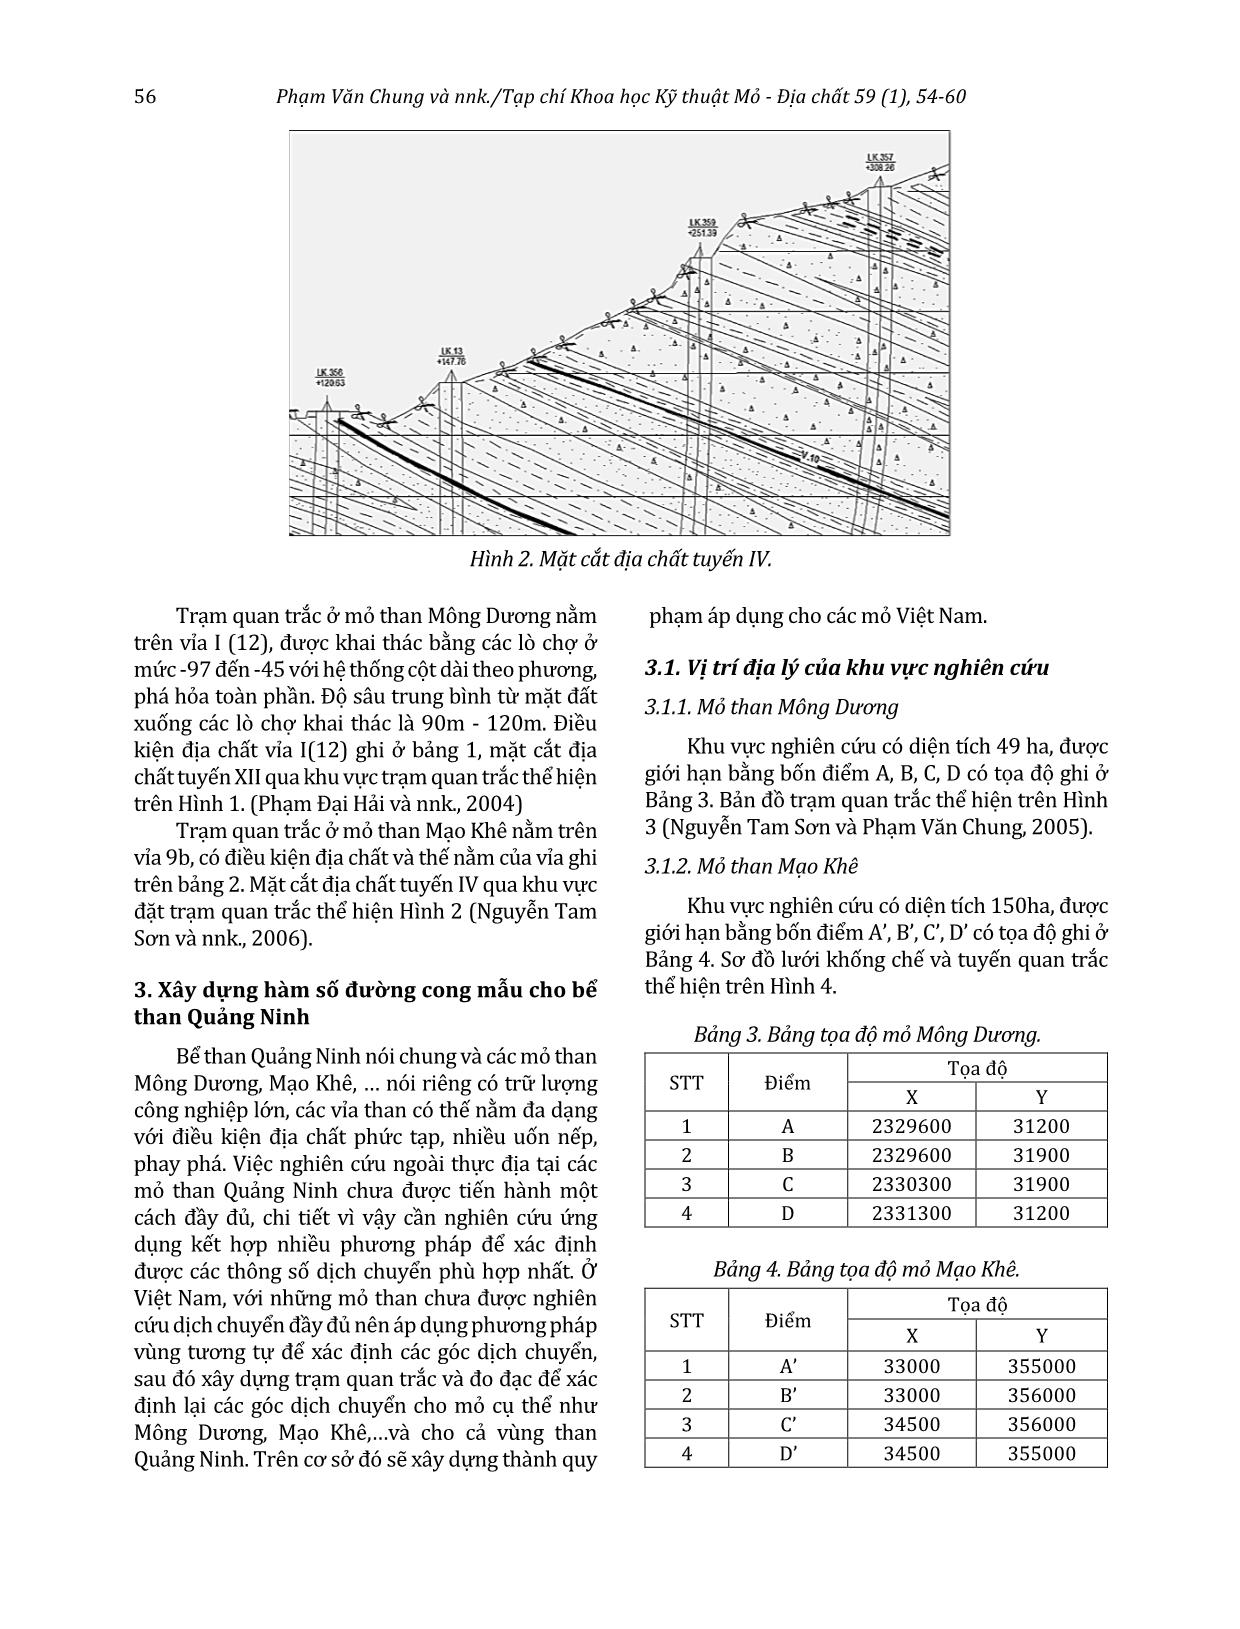 Xây dựng hàm số đường cong mẫu cho bể than Quảng Ninh từ các số liệu quan trắc thực địa trang 3